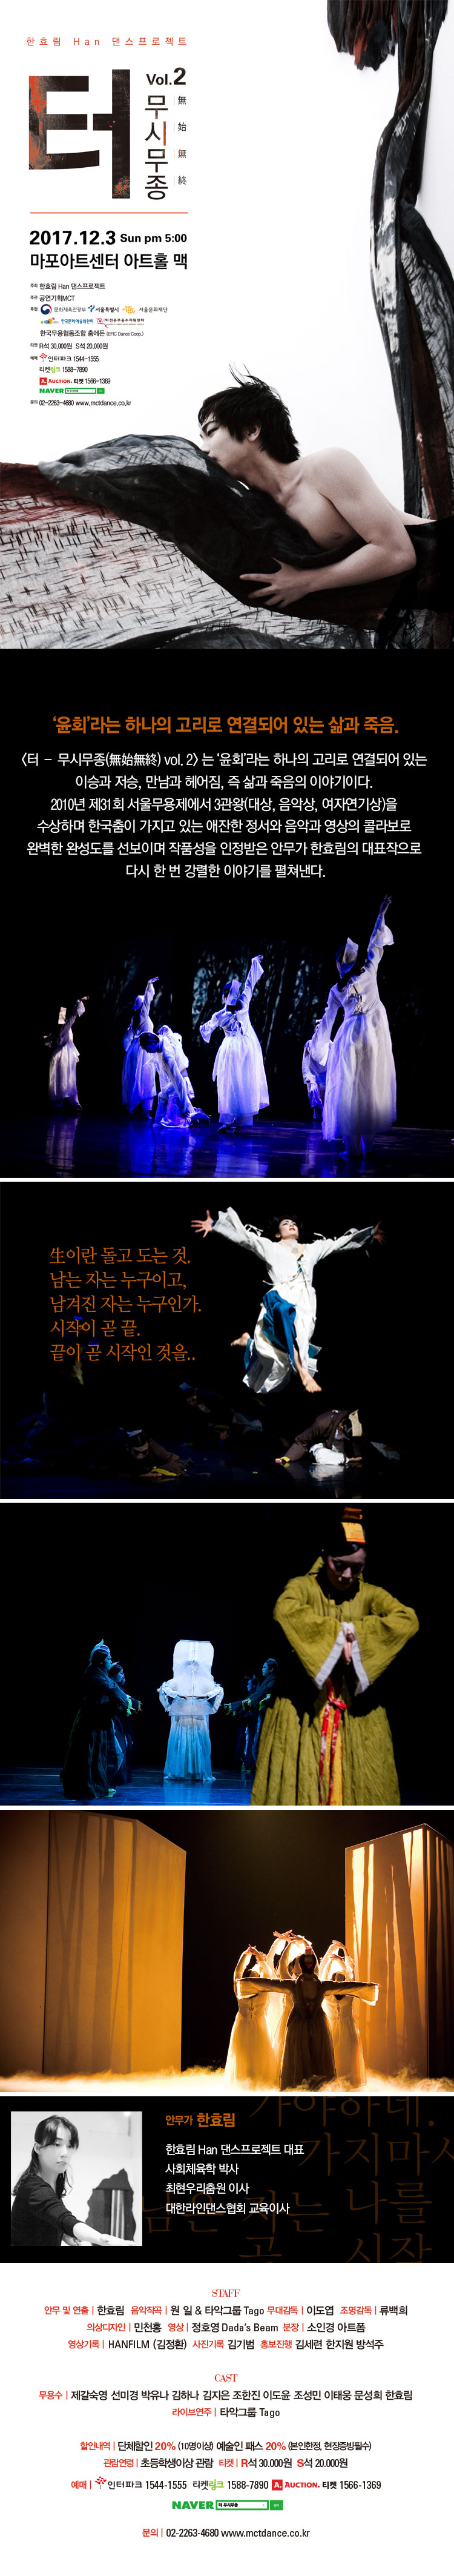 11월23일국립국악원 예악당 - 박병천 그남자의 춤 이야기 이미지